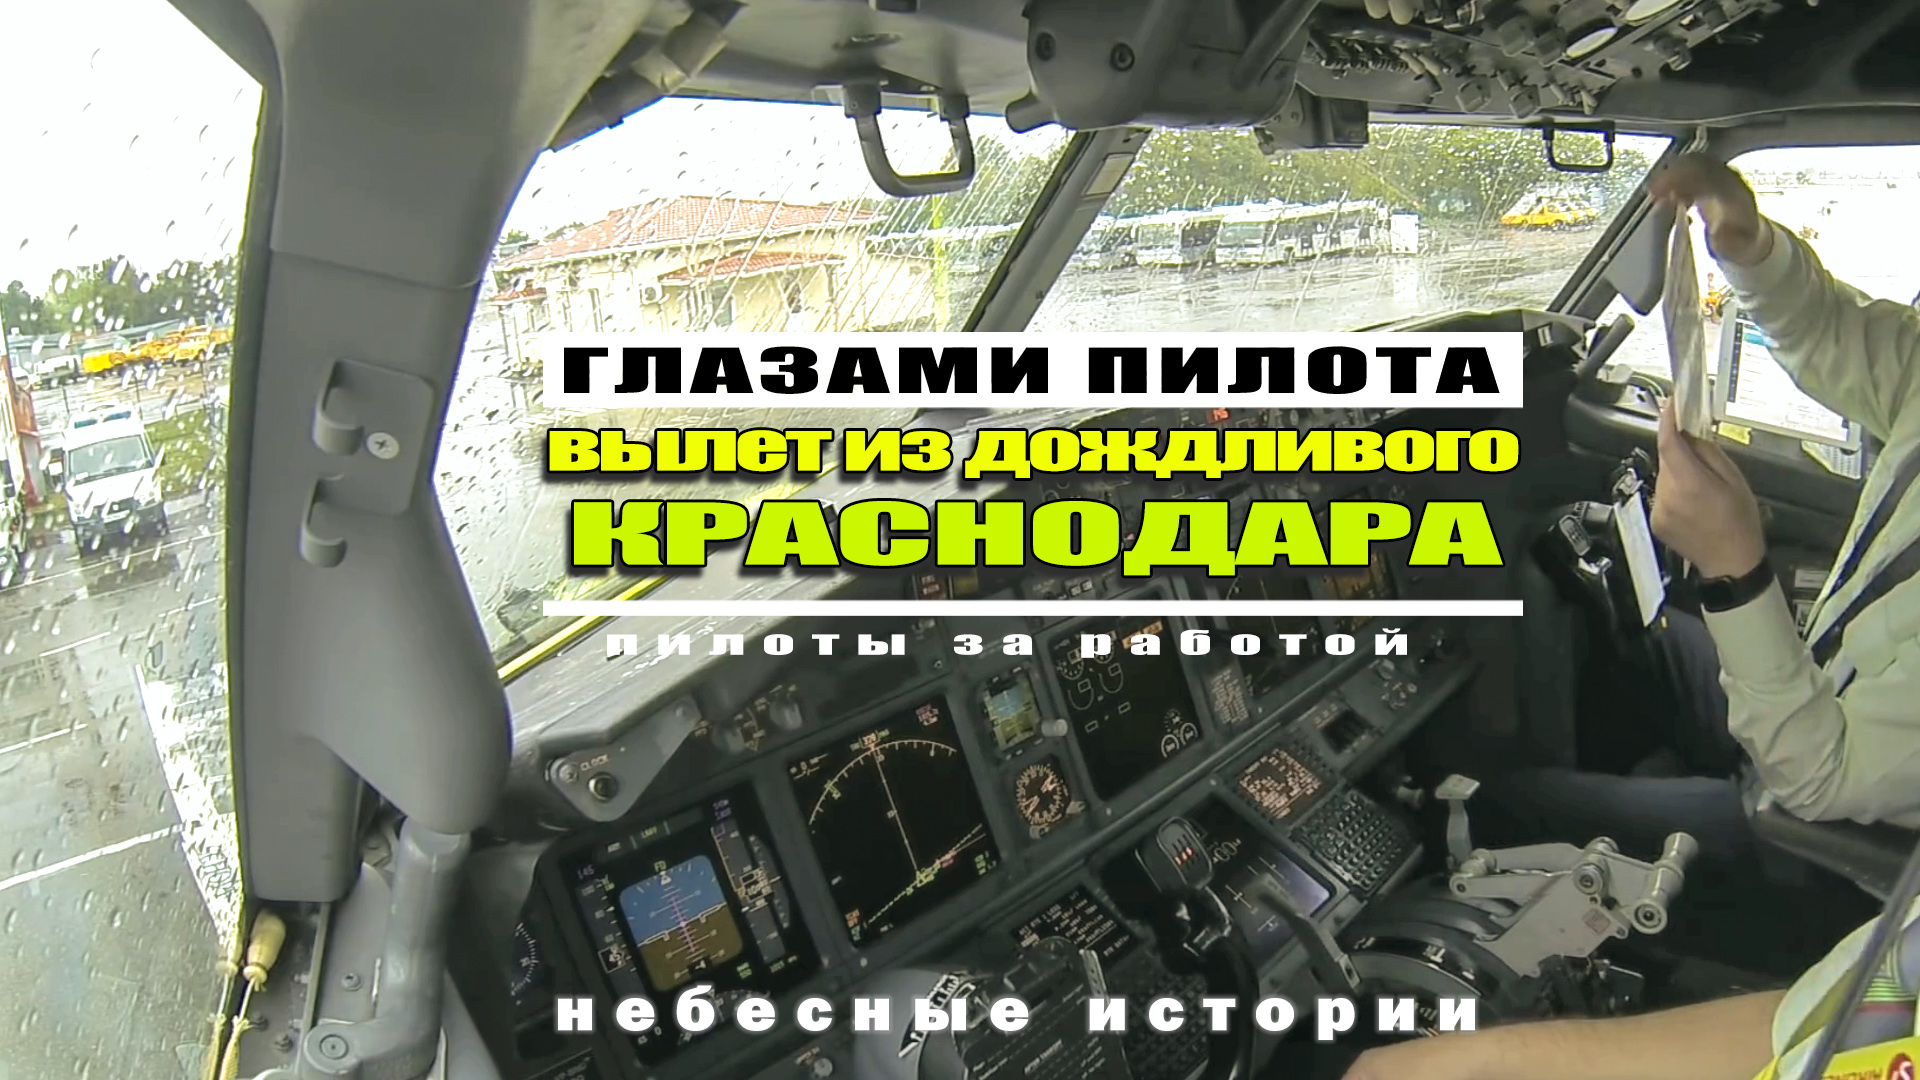 Загляните в кабину пилотов Боинг-737! Вылет из дождливого Краснодара